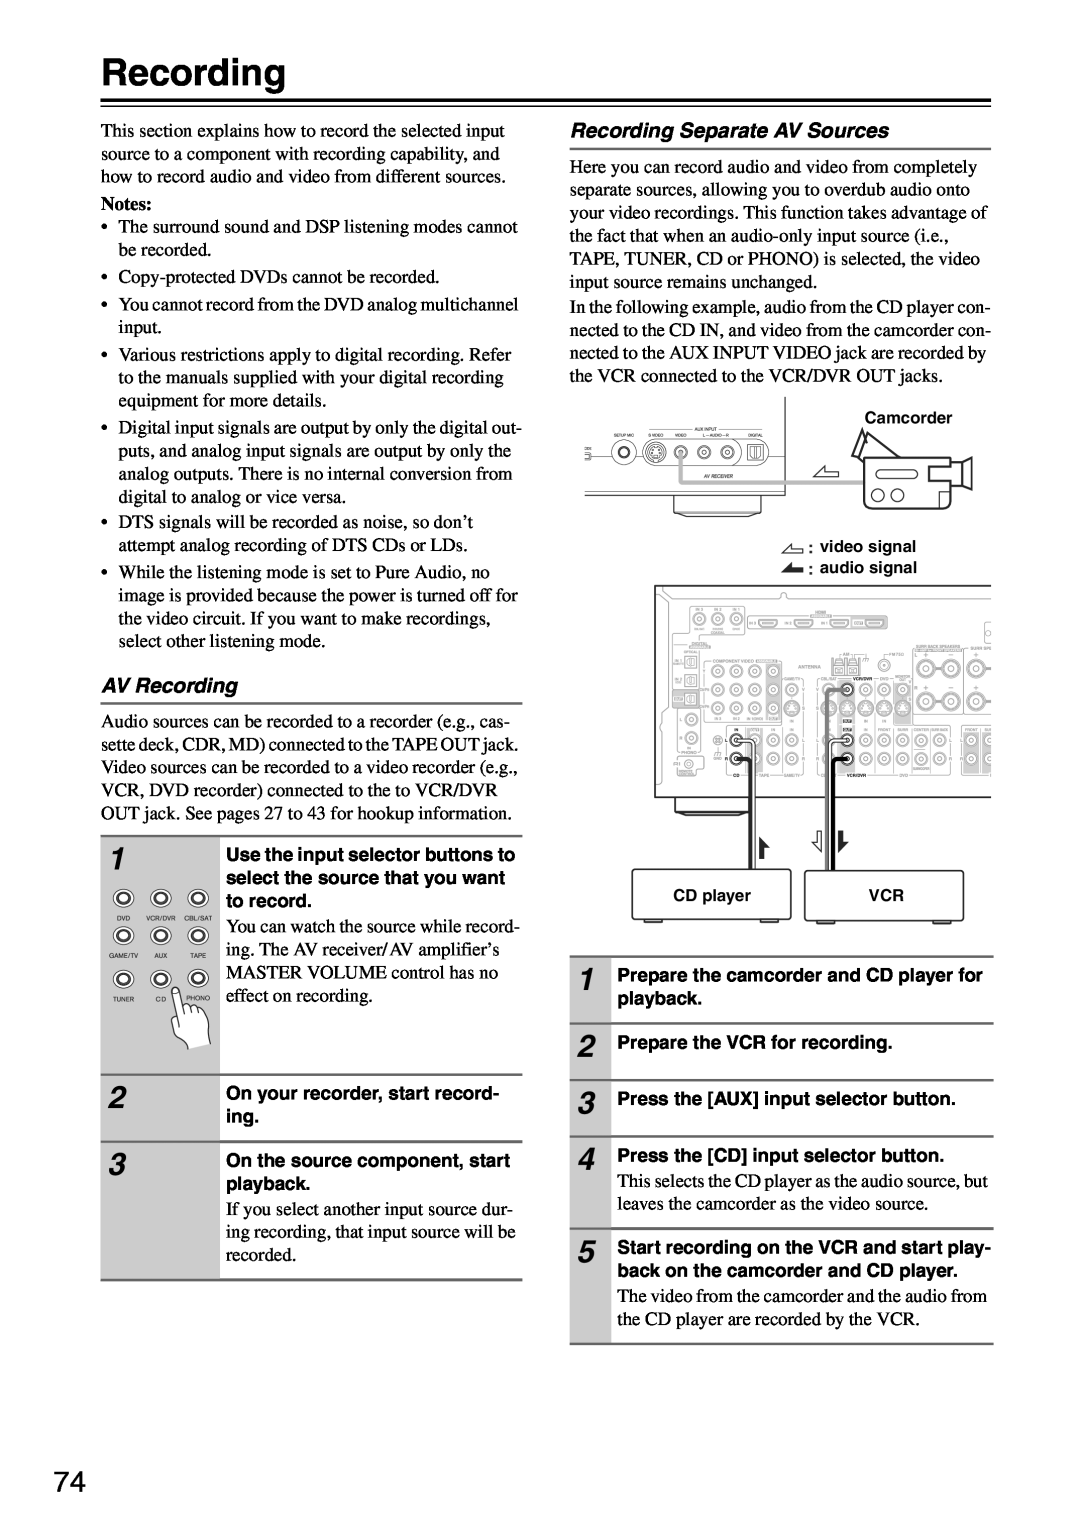 Onkyo TX-SA705 instruction manual AV Recording, Recording Separate AV Sources, Notes 